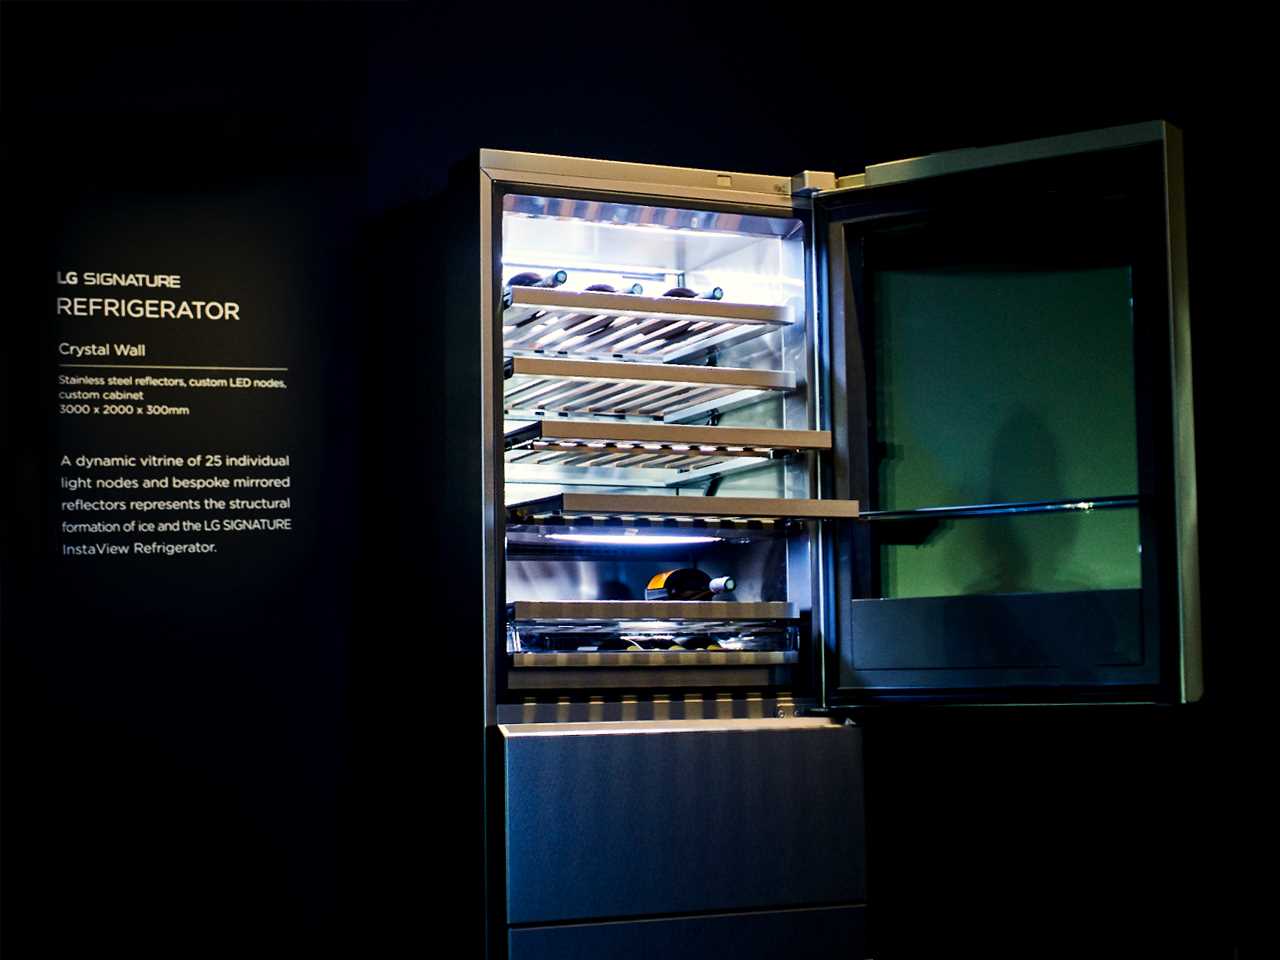 Винный шкаф LG SIGNATURE, представленный на выставке IFA 2018